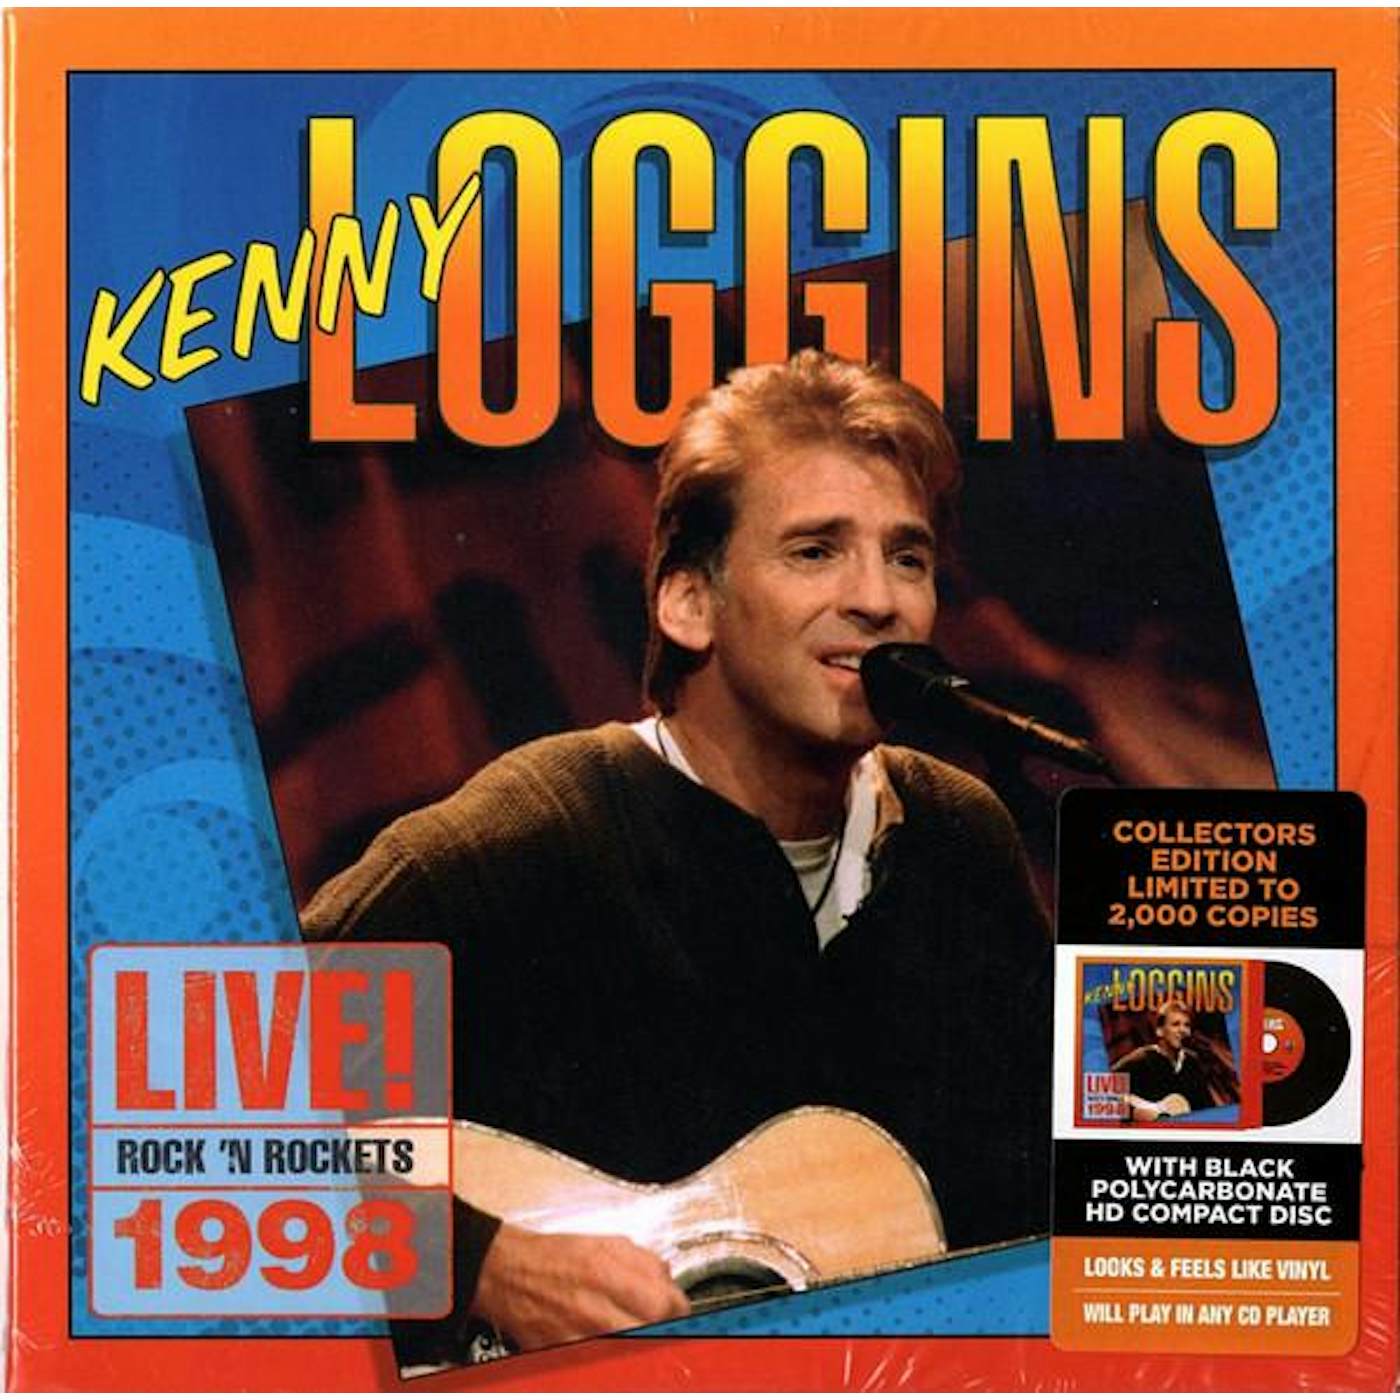 Kenny Loggins CD - Live! Rock N' Rockets 1998